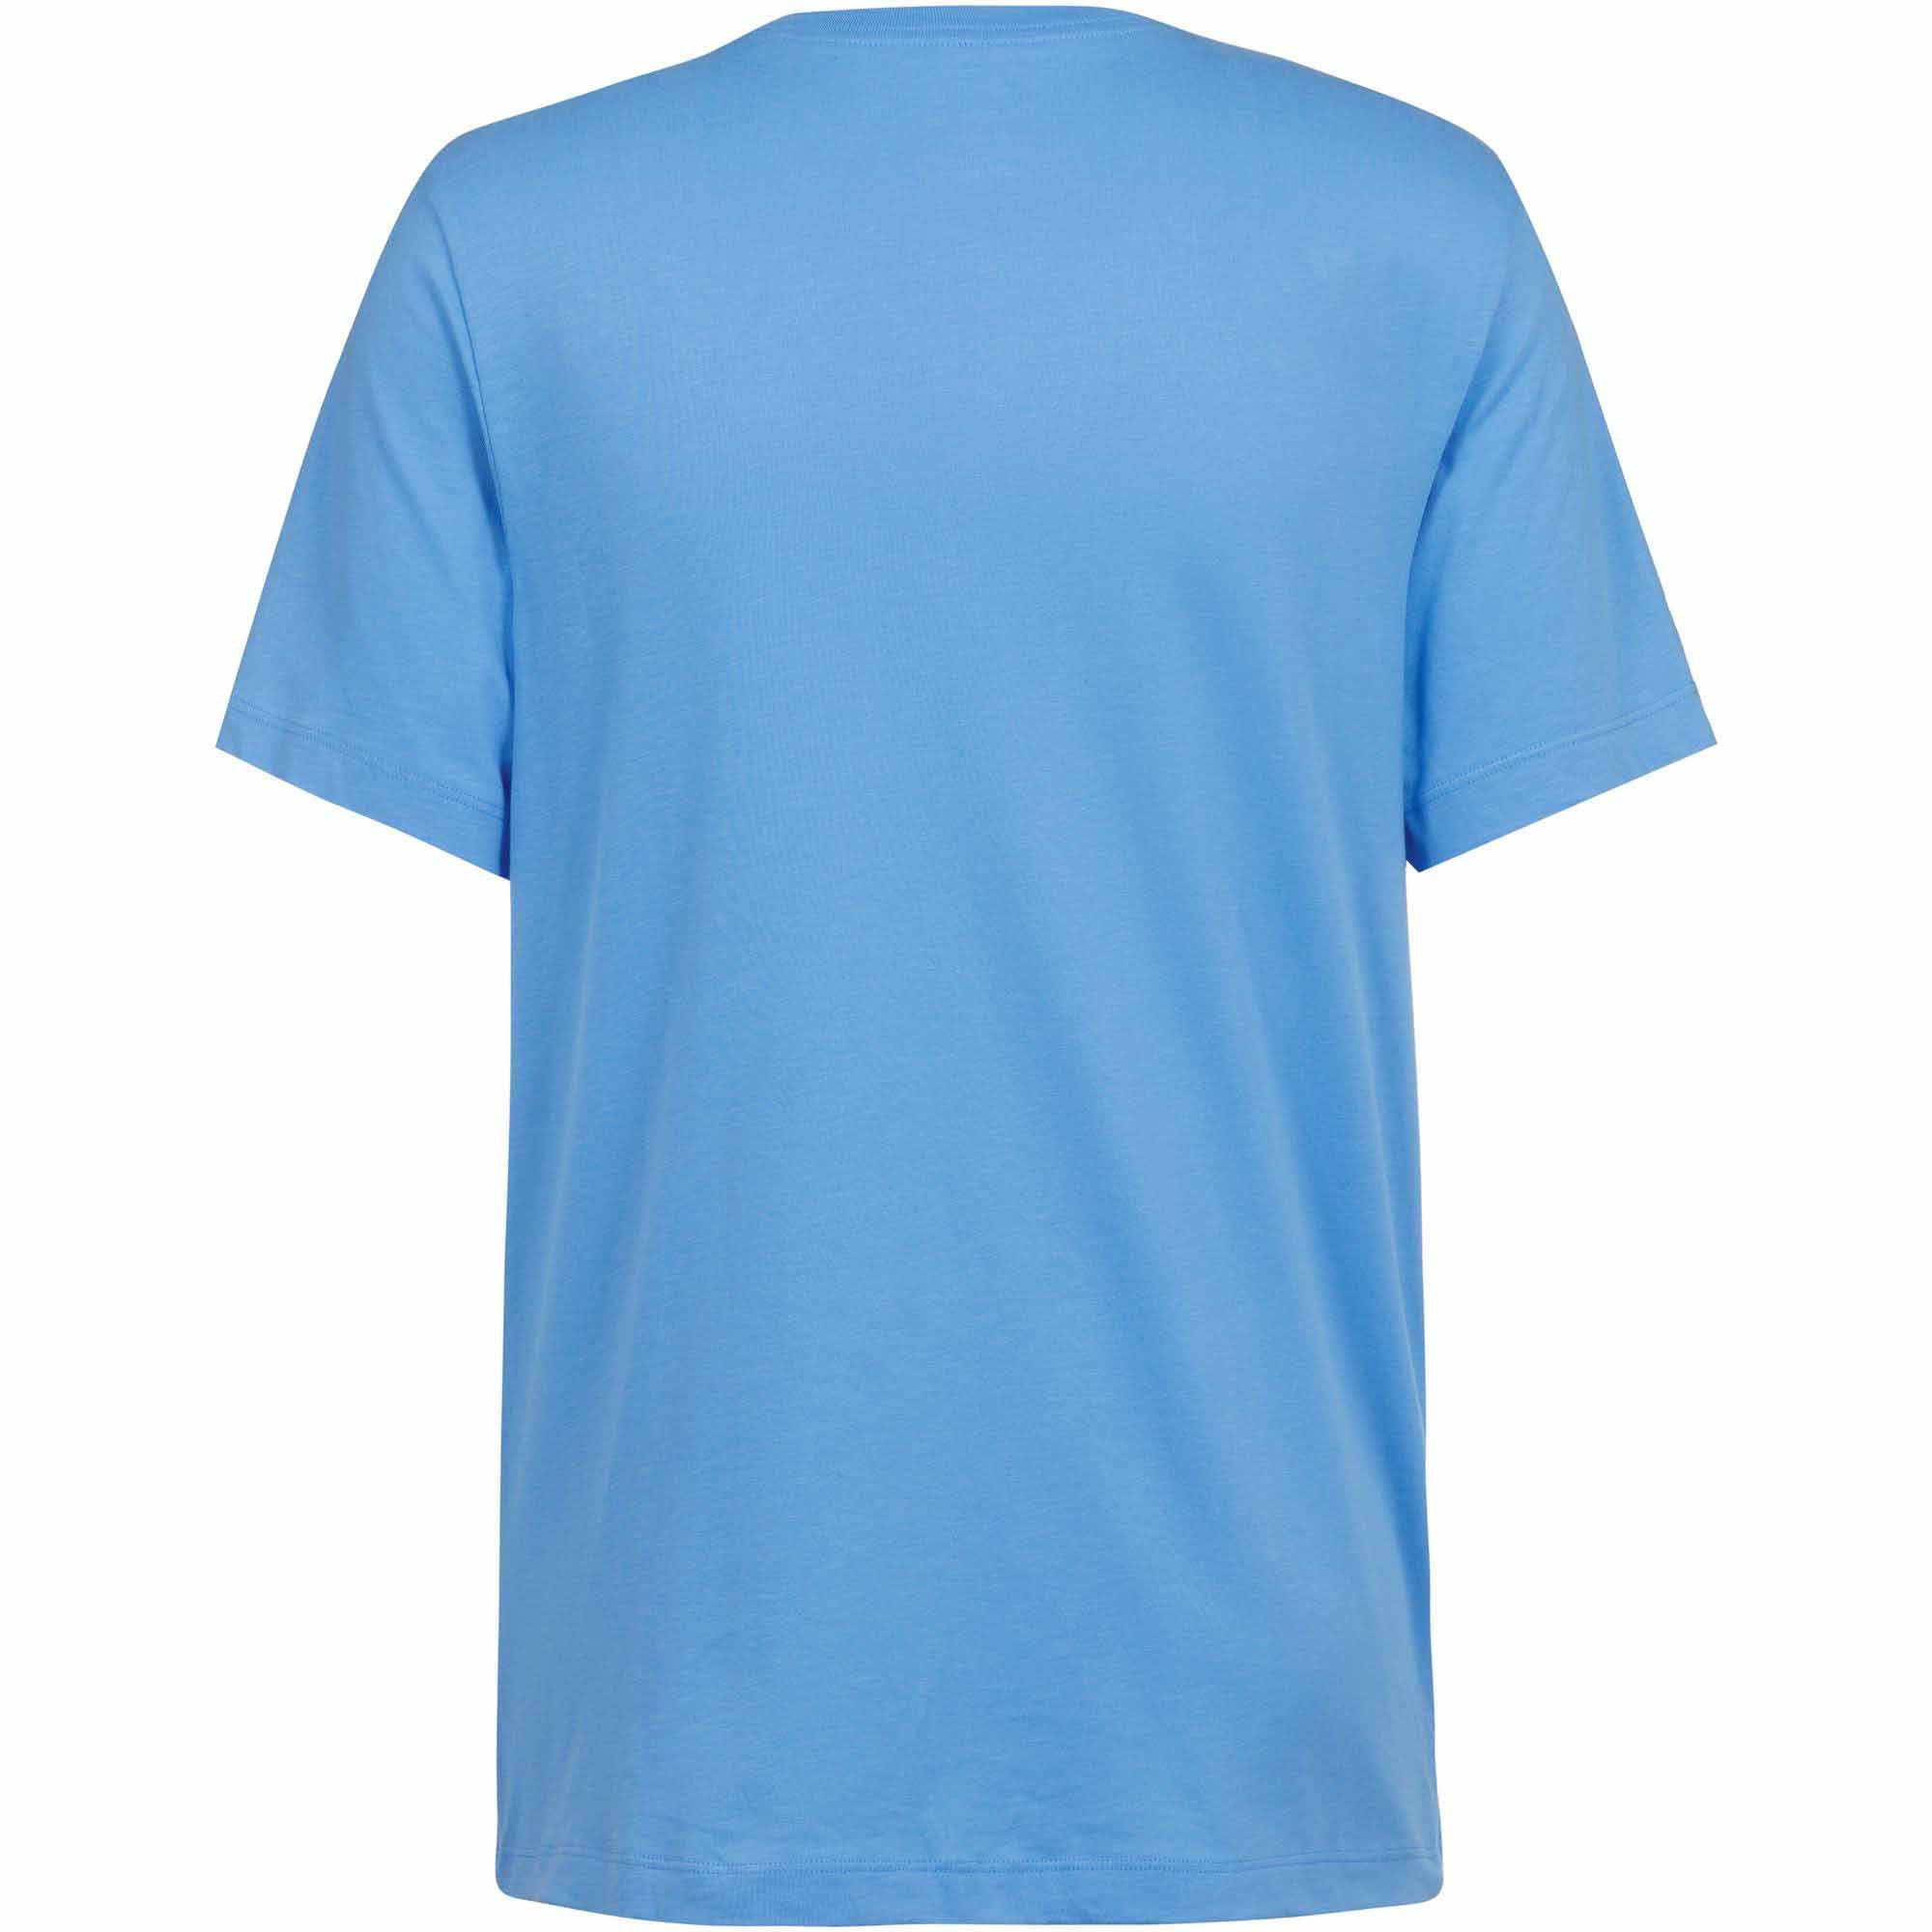 Nike Fitness Dri-Fit T-Shirt